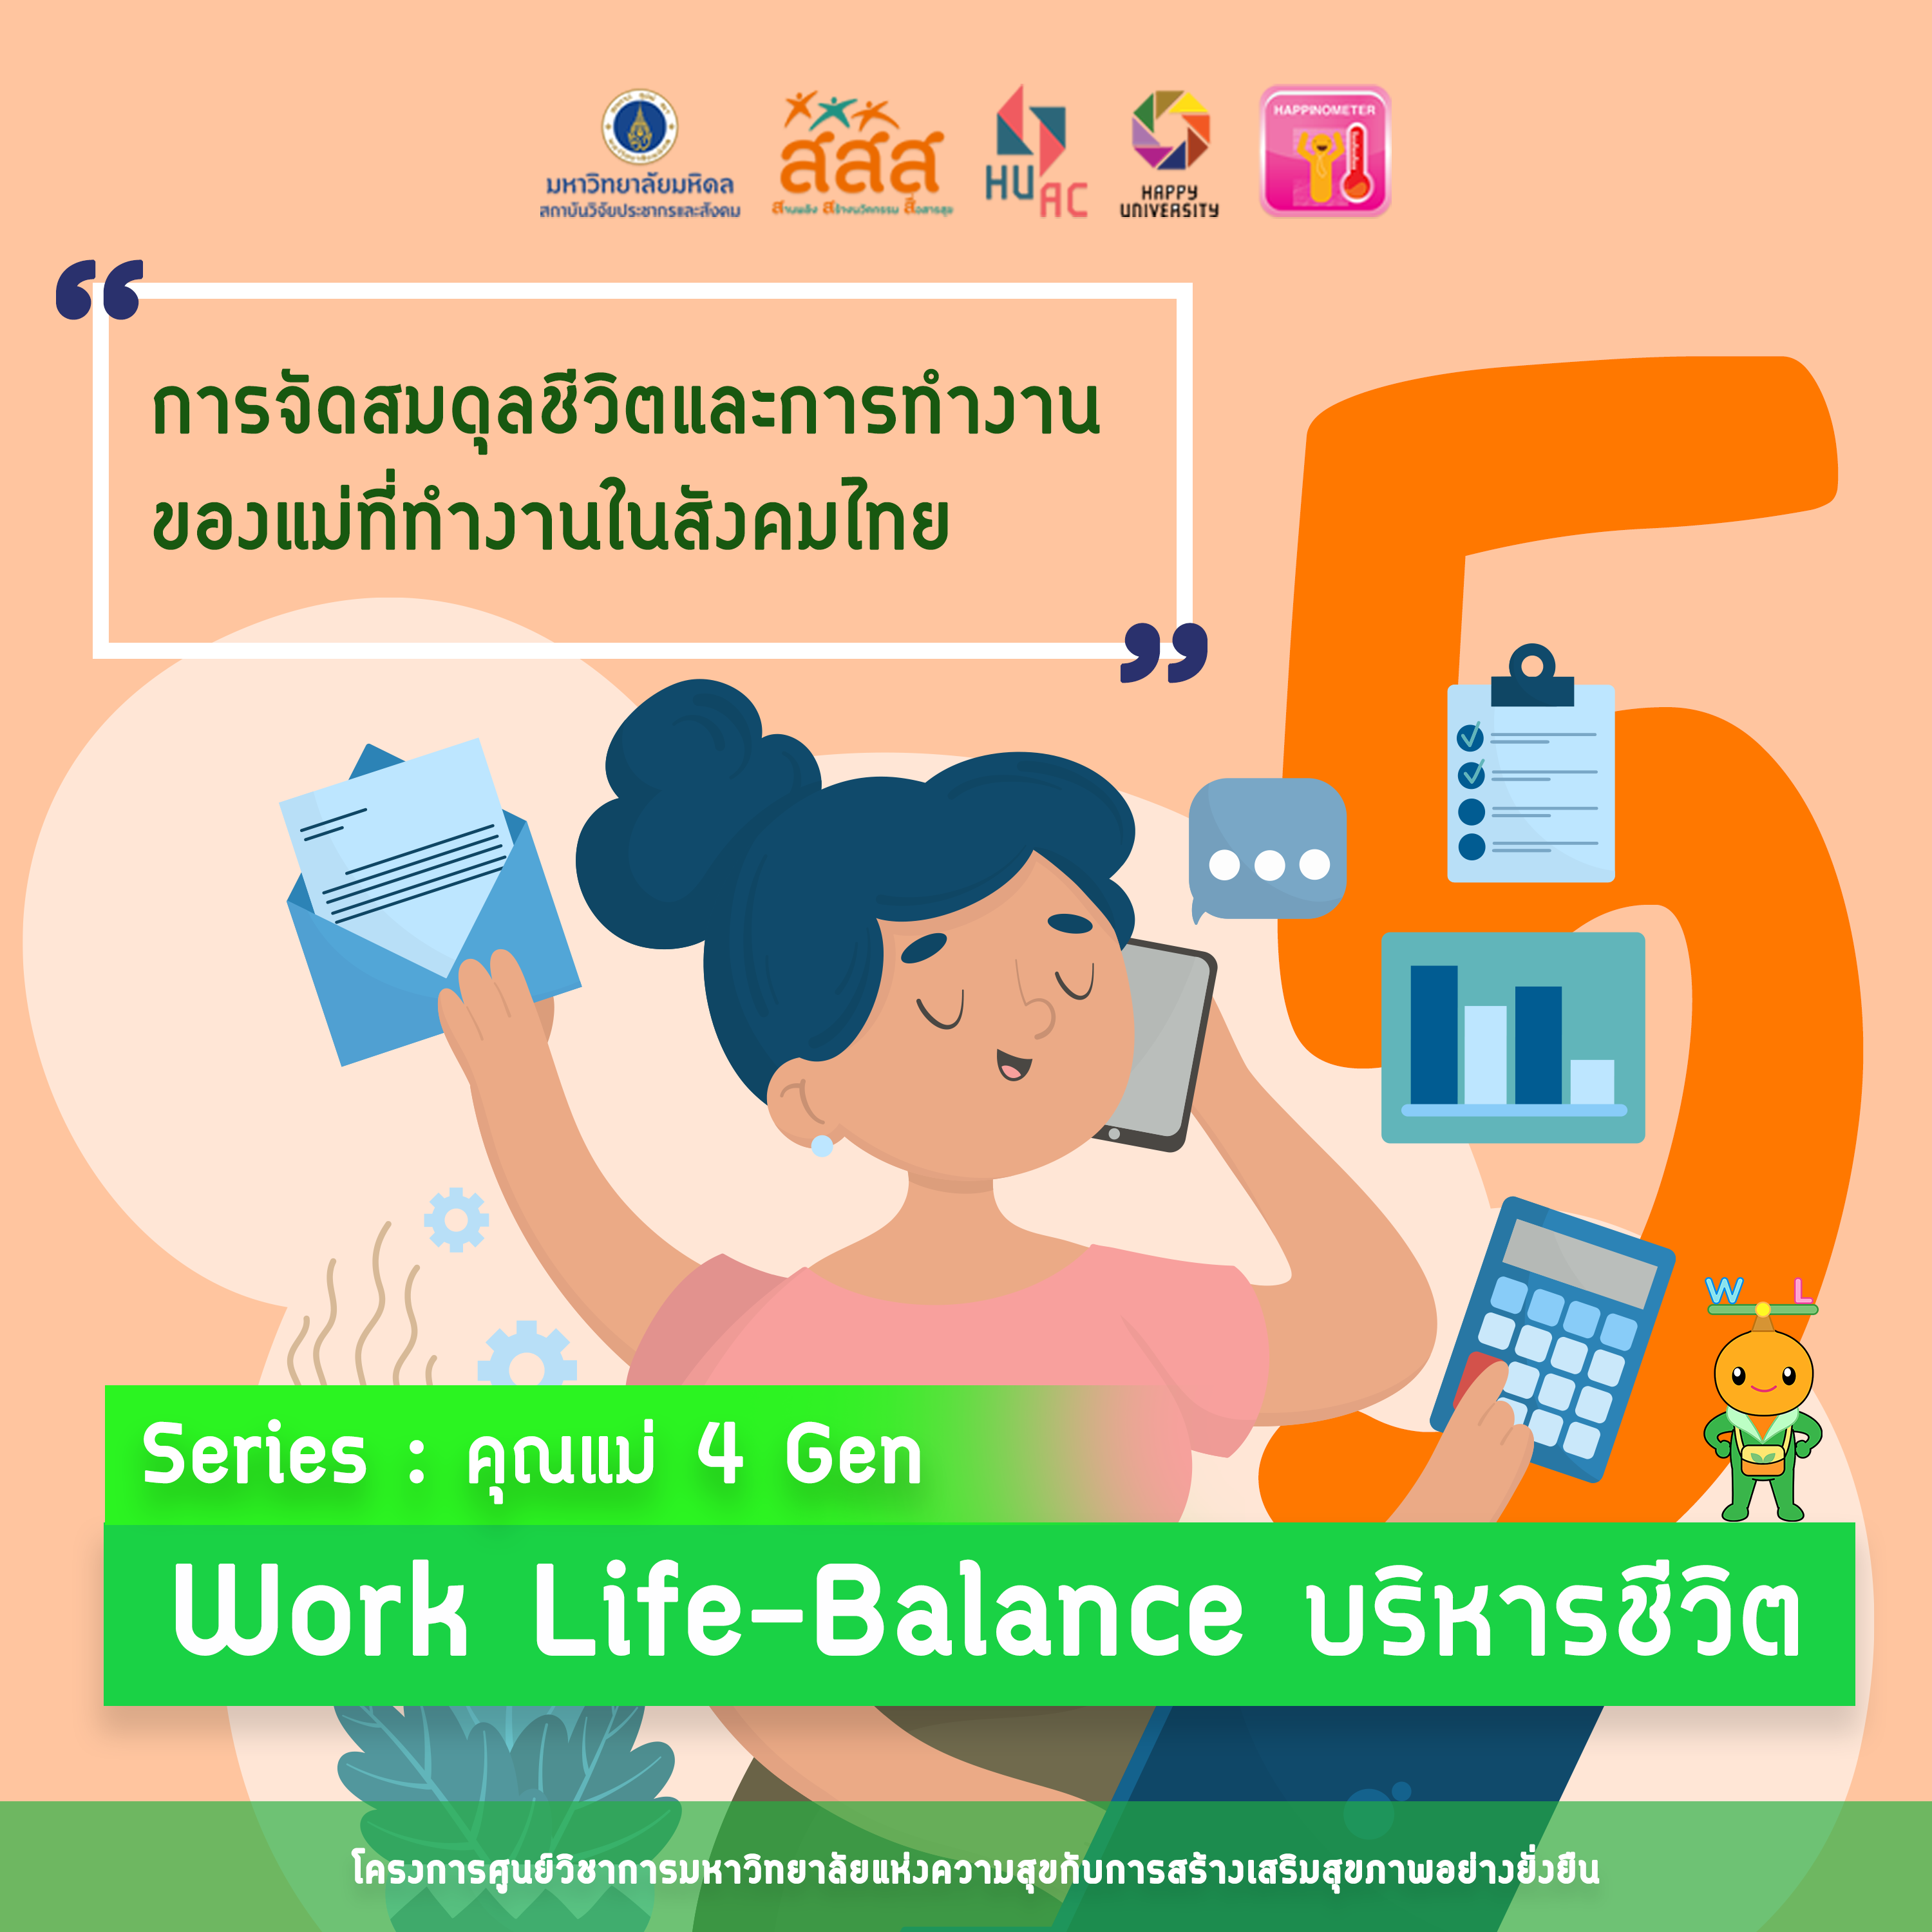 Series คุณแม่ 4 Gen EPISODE 5 : Work Life-Balance บริหารชีวิต